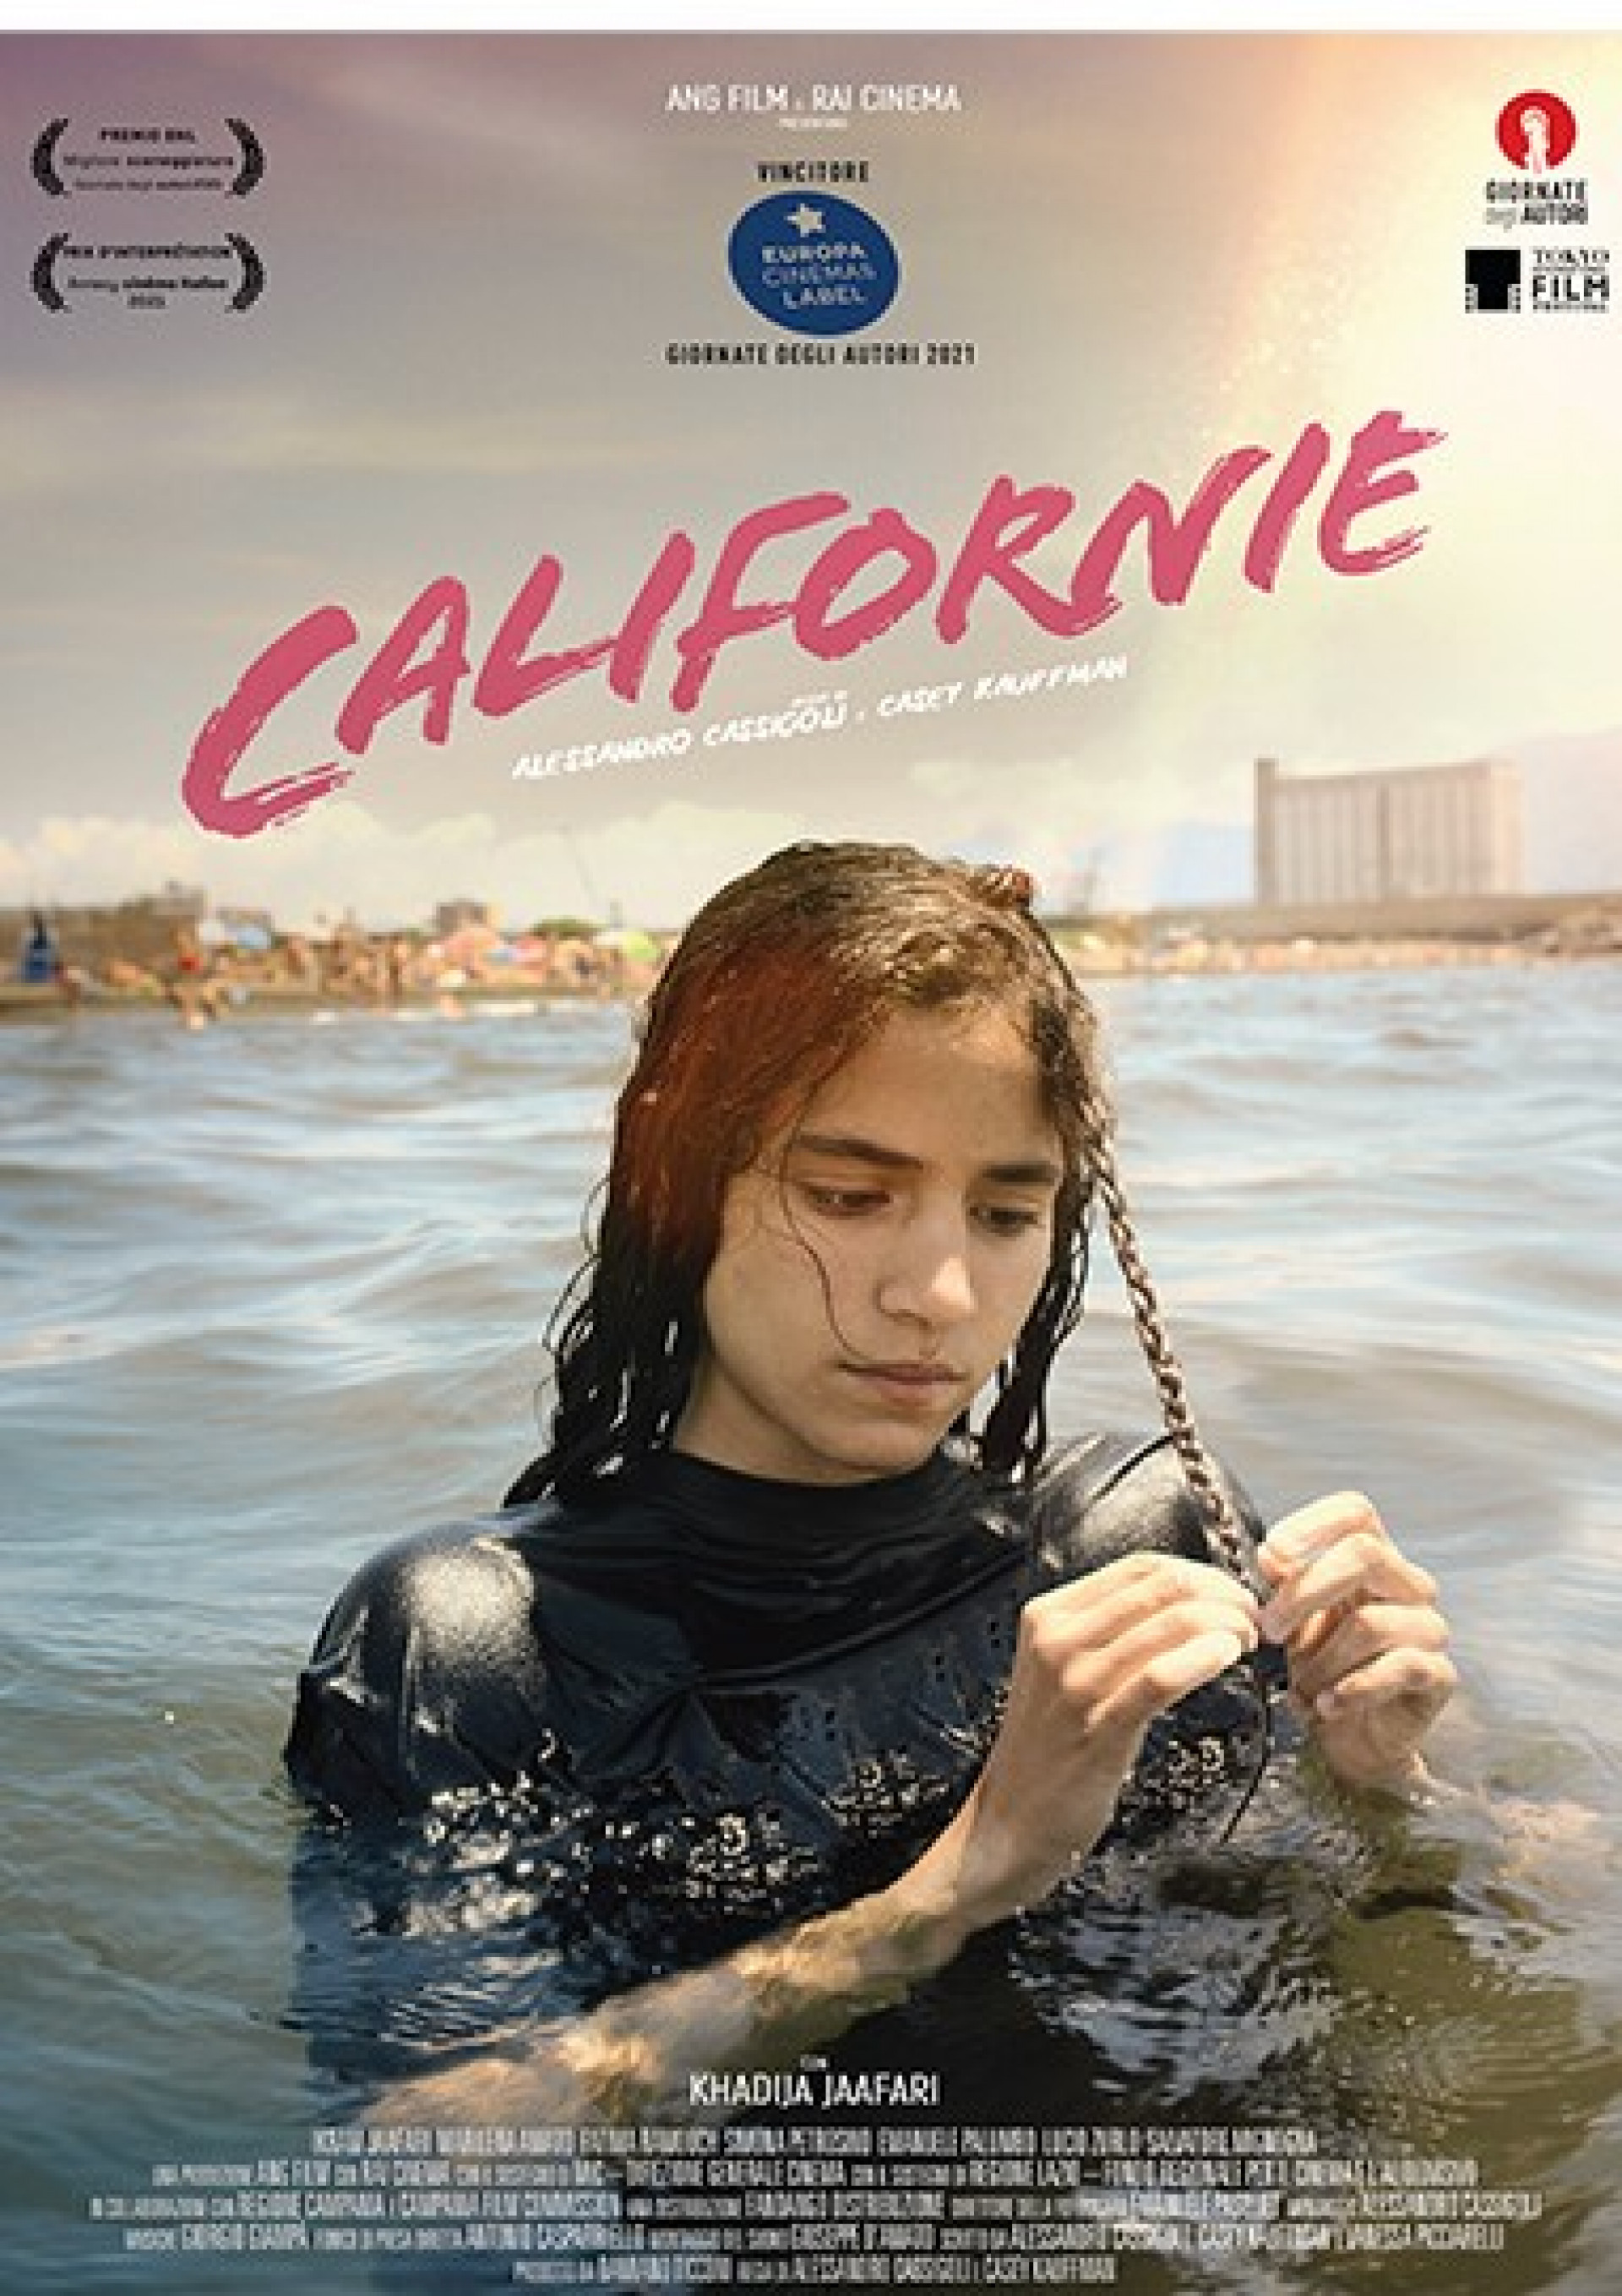 CINEMA ARPAd - storie adolescenti: "CALIFORNIE" mercoledì 15 Giugno 2022, ore 20.45